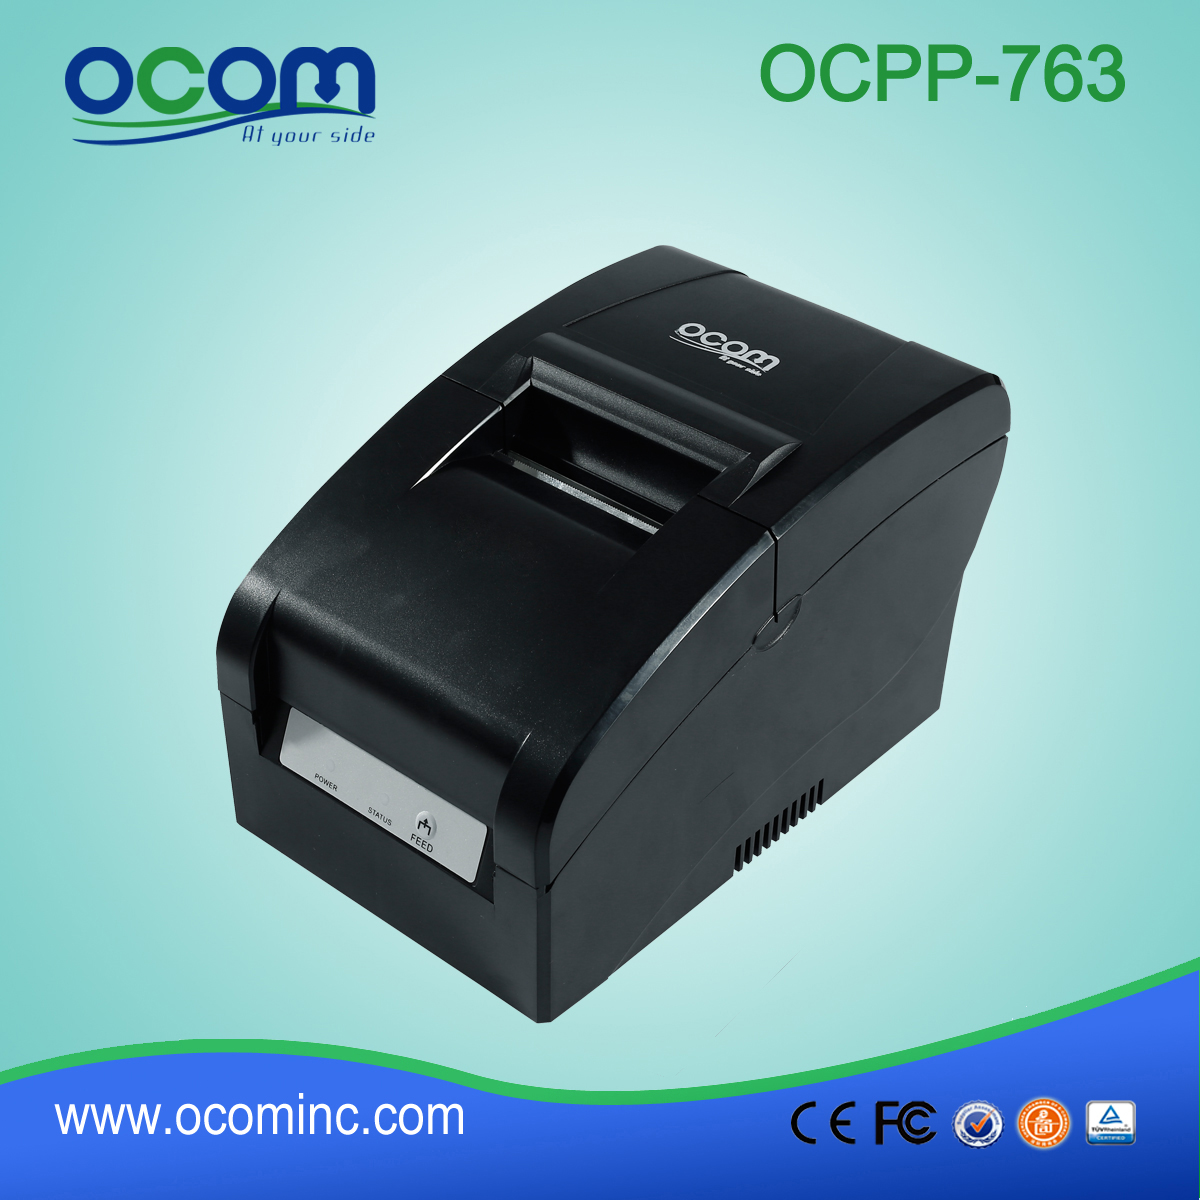 OCPP-763 Mini Impact Dot Matrix Printer com 76 mm de largura Tamanho do papel para caixa registradora